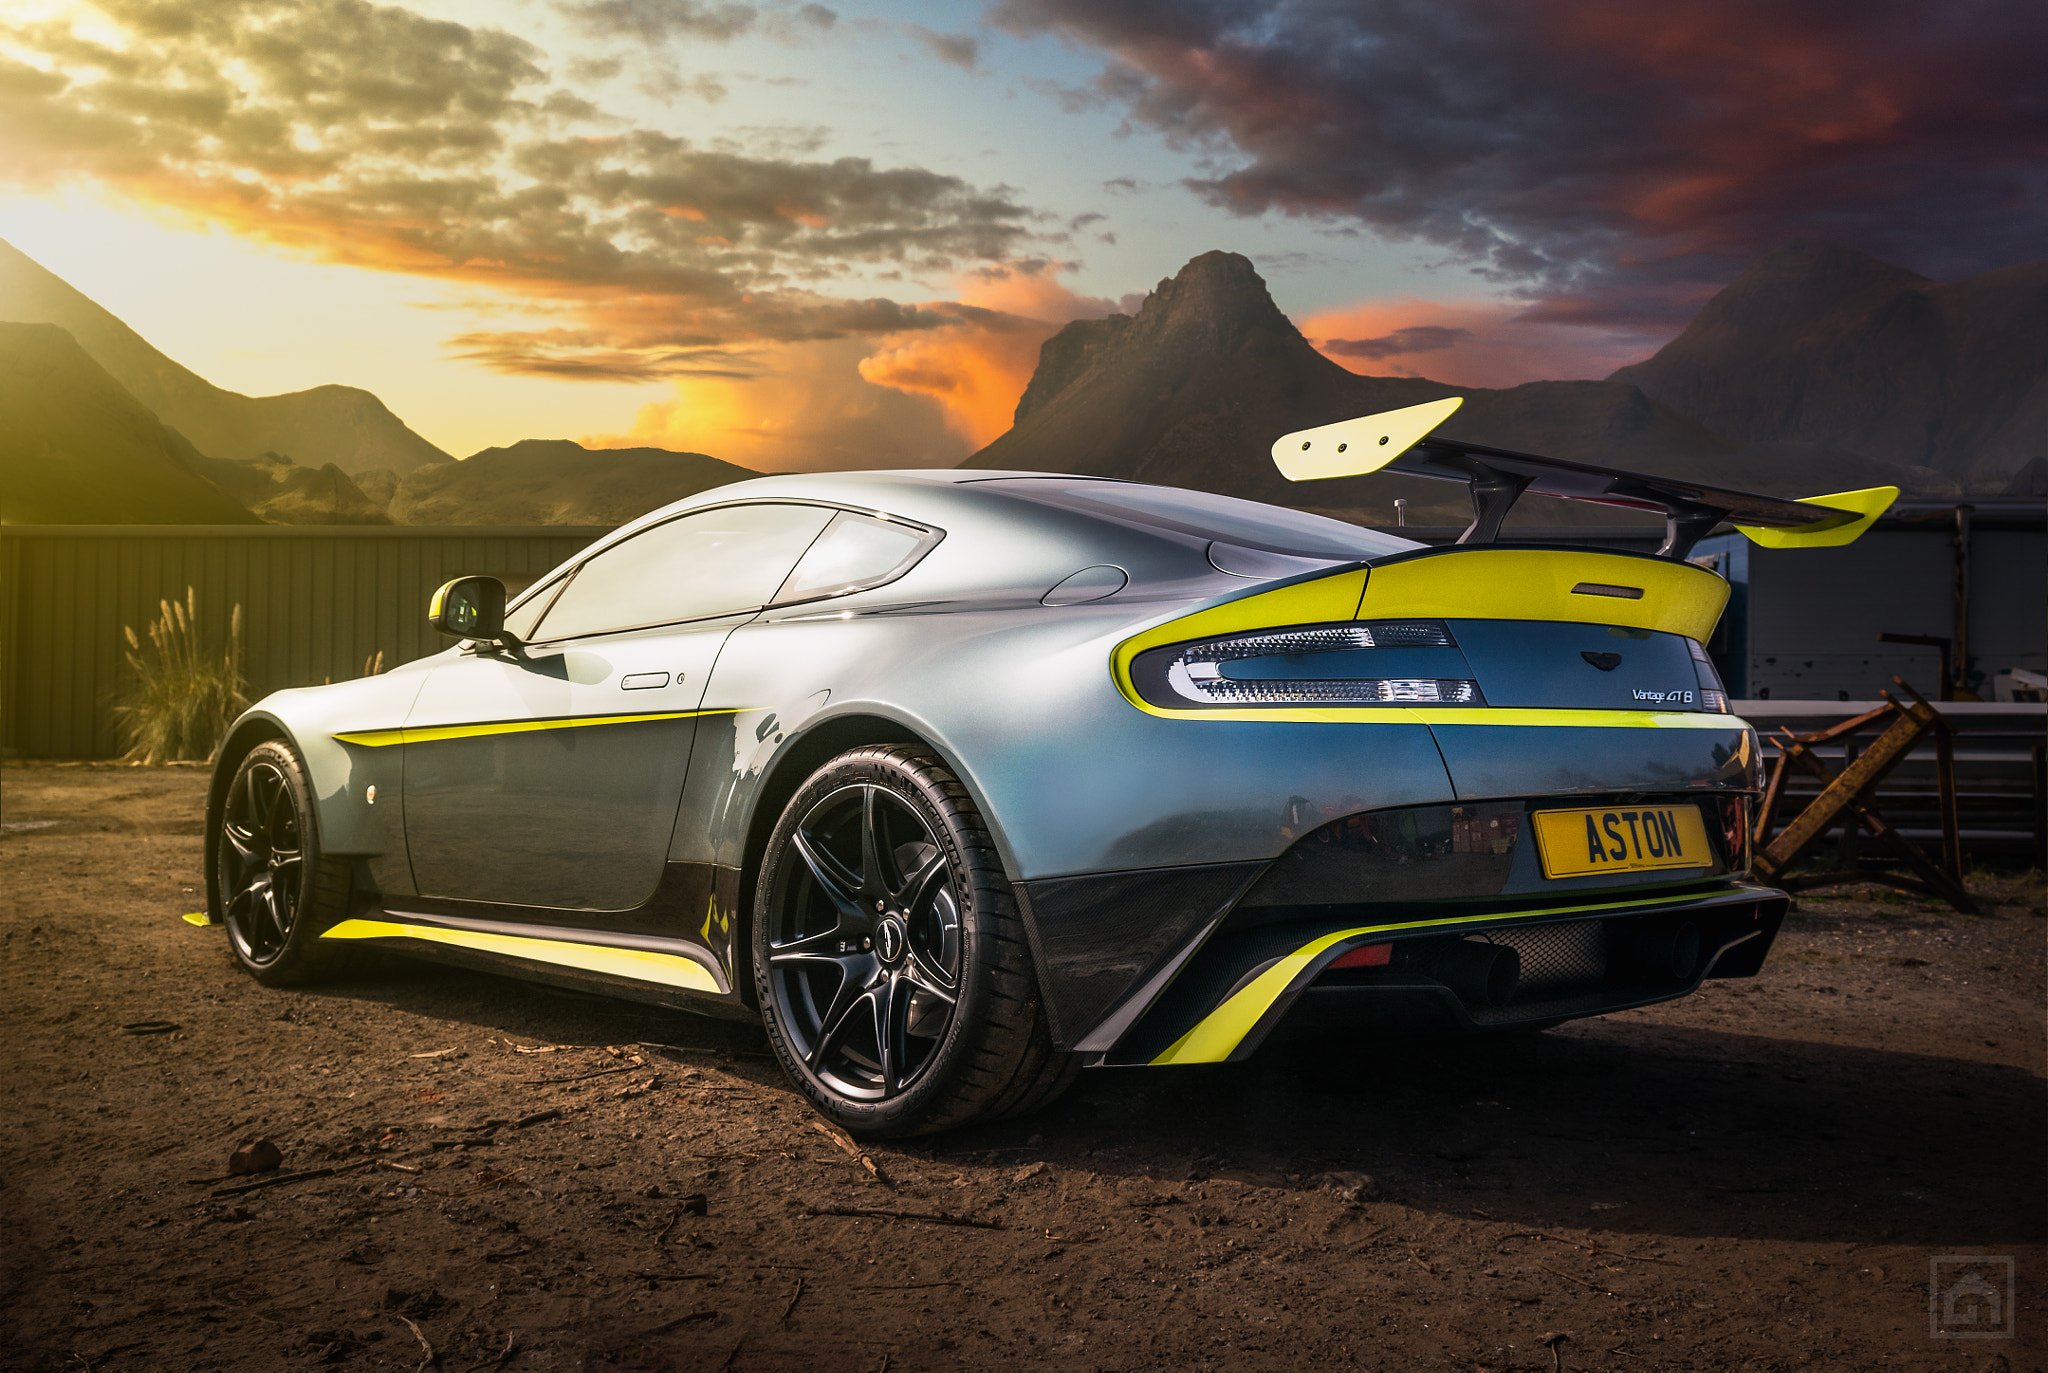 Meilleurs fonds d'écran Aston Martin Vantage Gt8 pour l'écran du téléphone